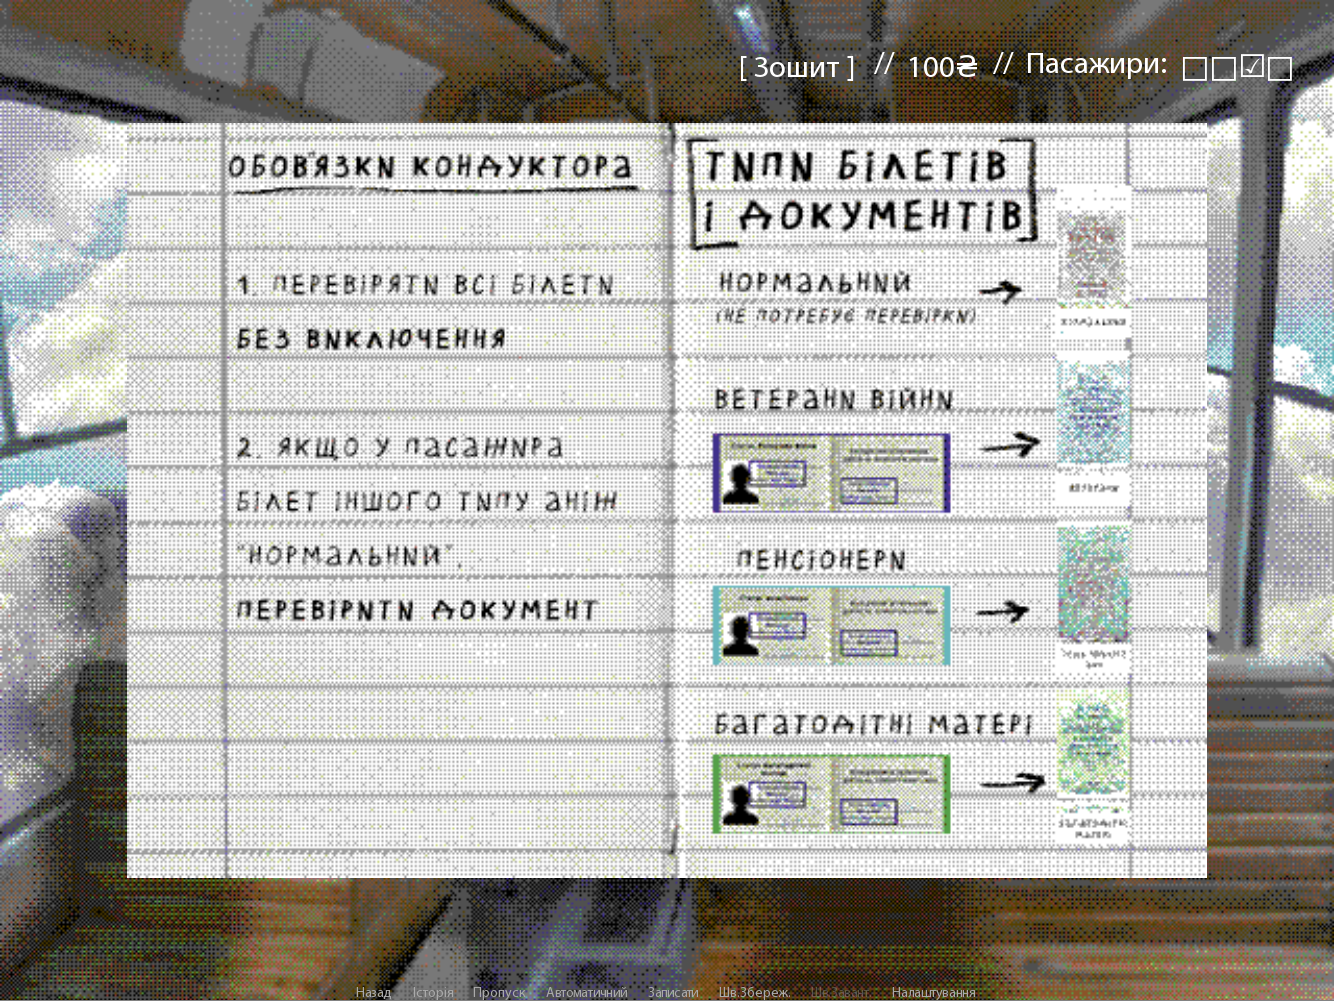 Скріншот зі сторінки гри